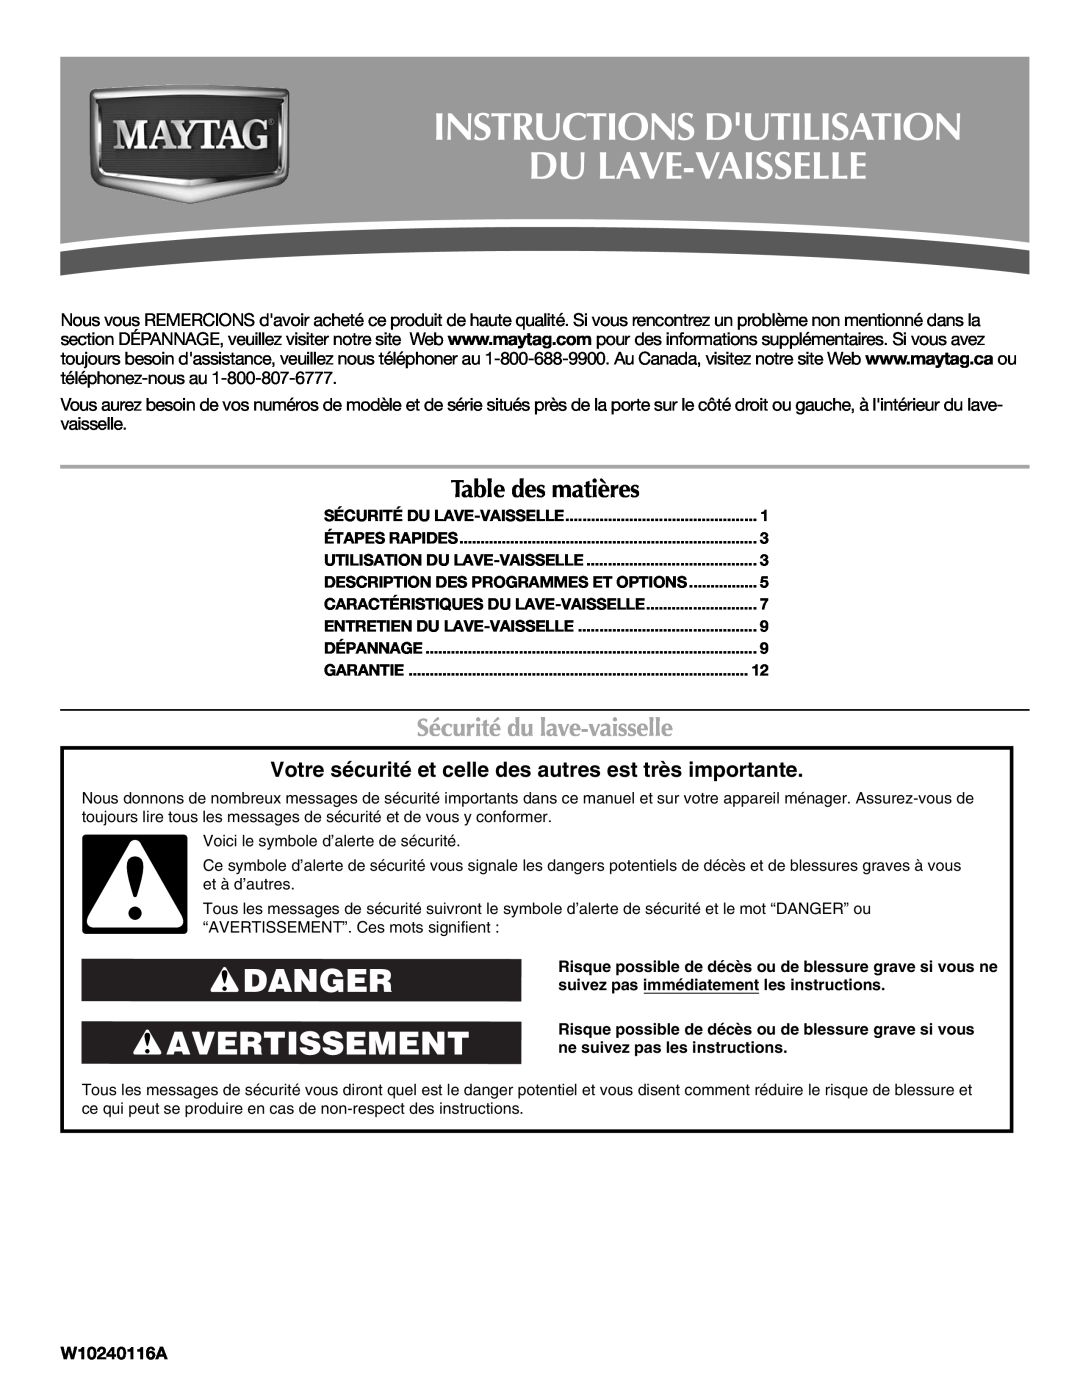 Maytag W10240117A Instructions Dutilisation Du Lave-Vaisselle, Danger Avertissement, Table des matières, W10240116A 